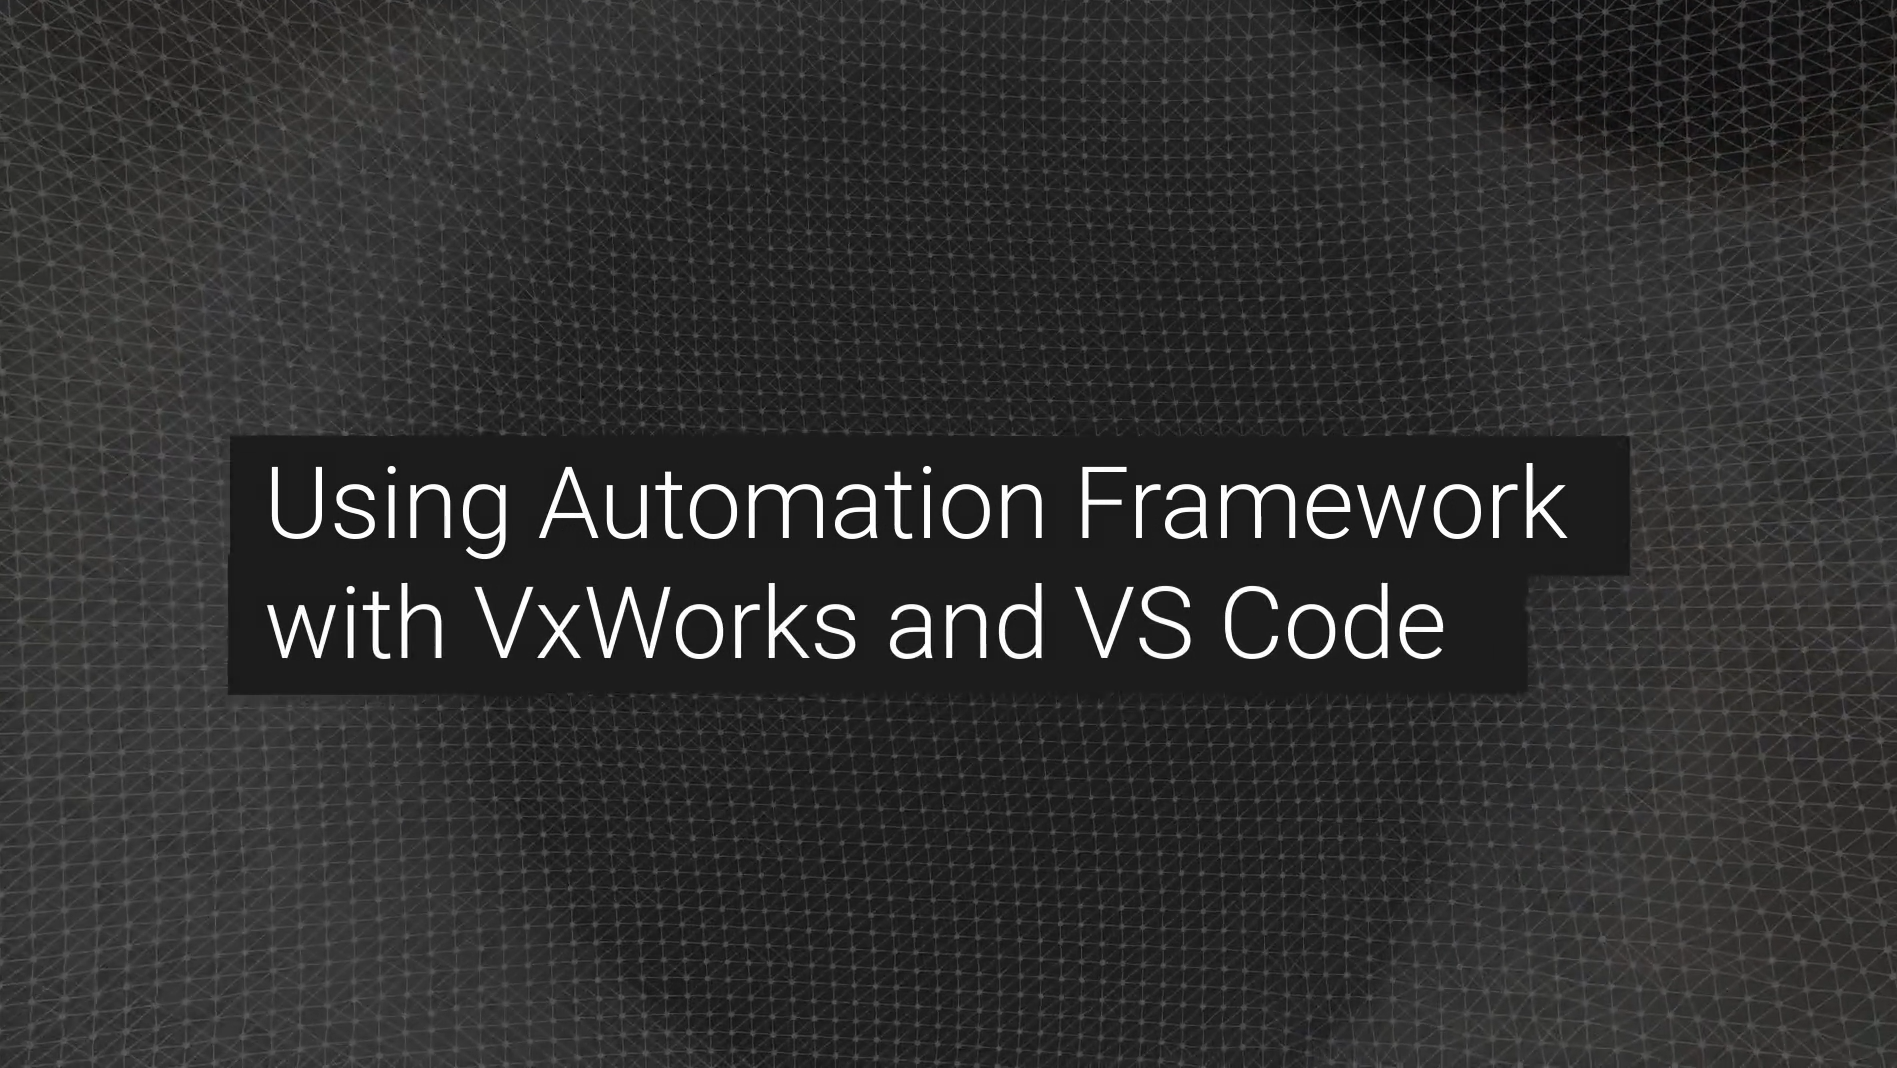 [Démo] Utiliser Wind River Automation Framework avec VxWorks et VS Code